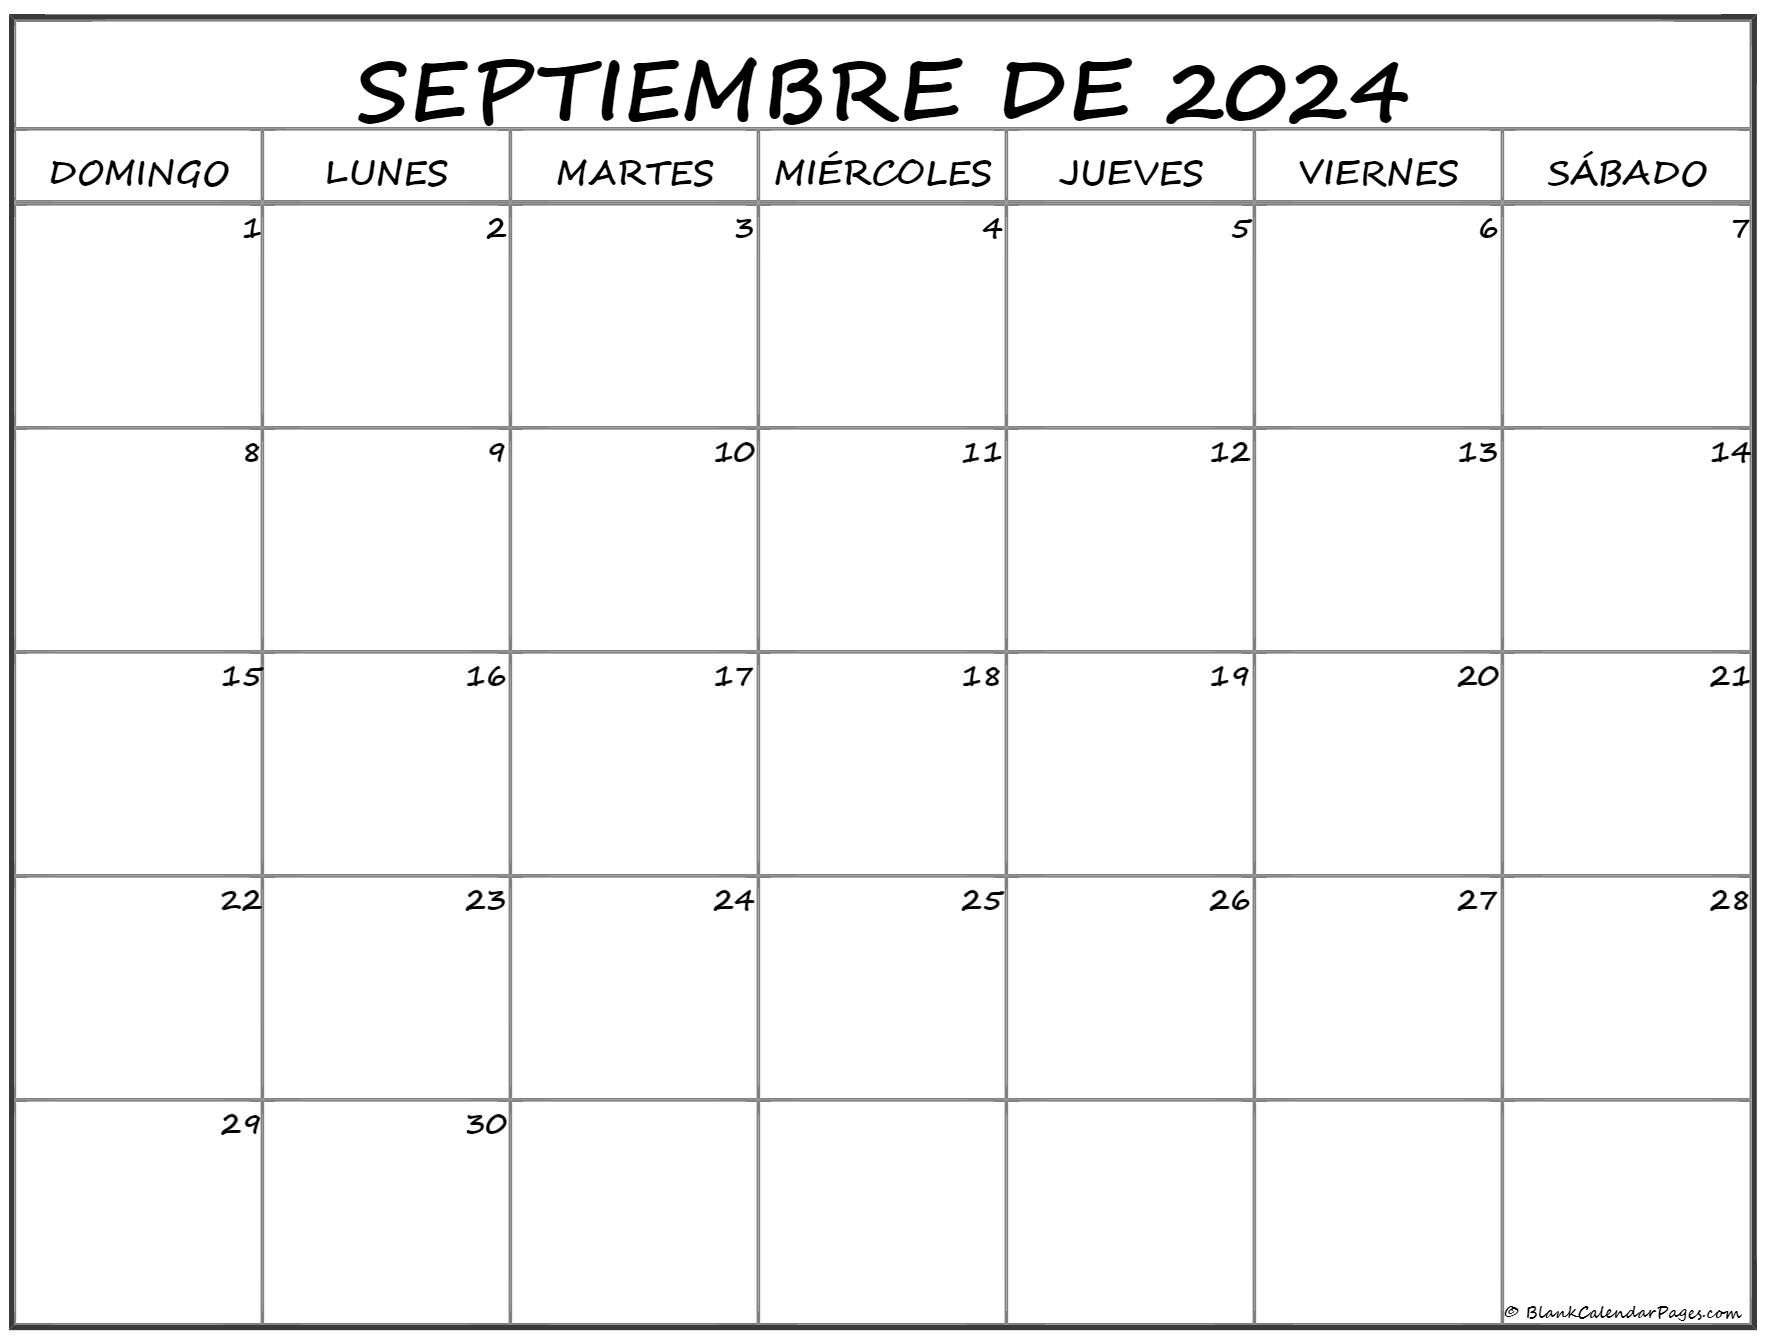 septiembre de 2024 calendario gratis Calendario septiembre